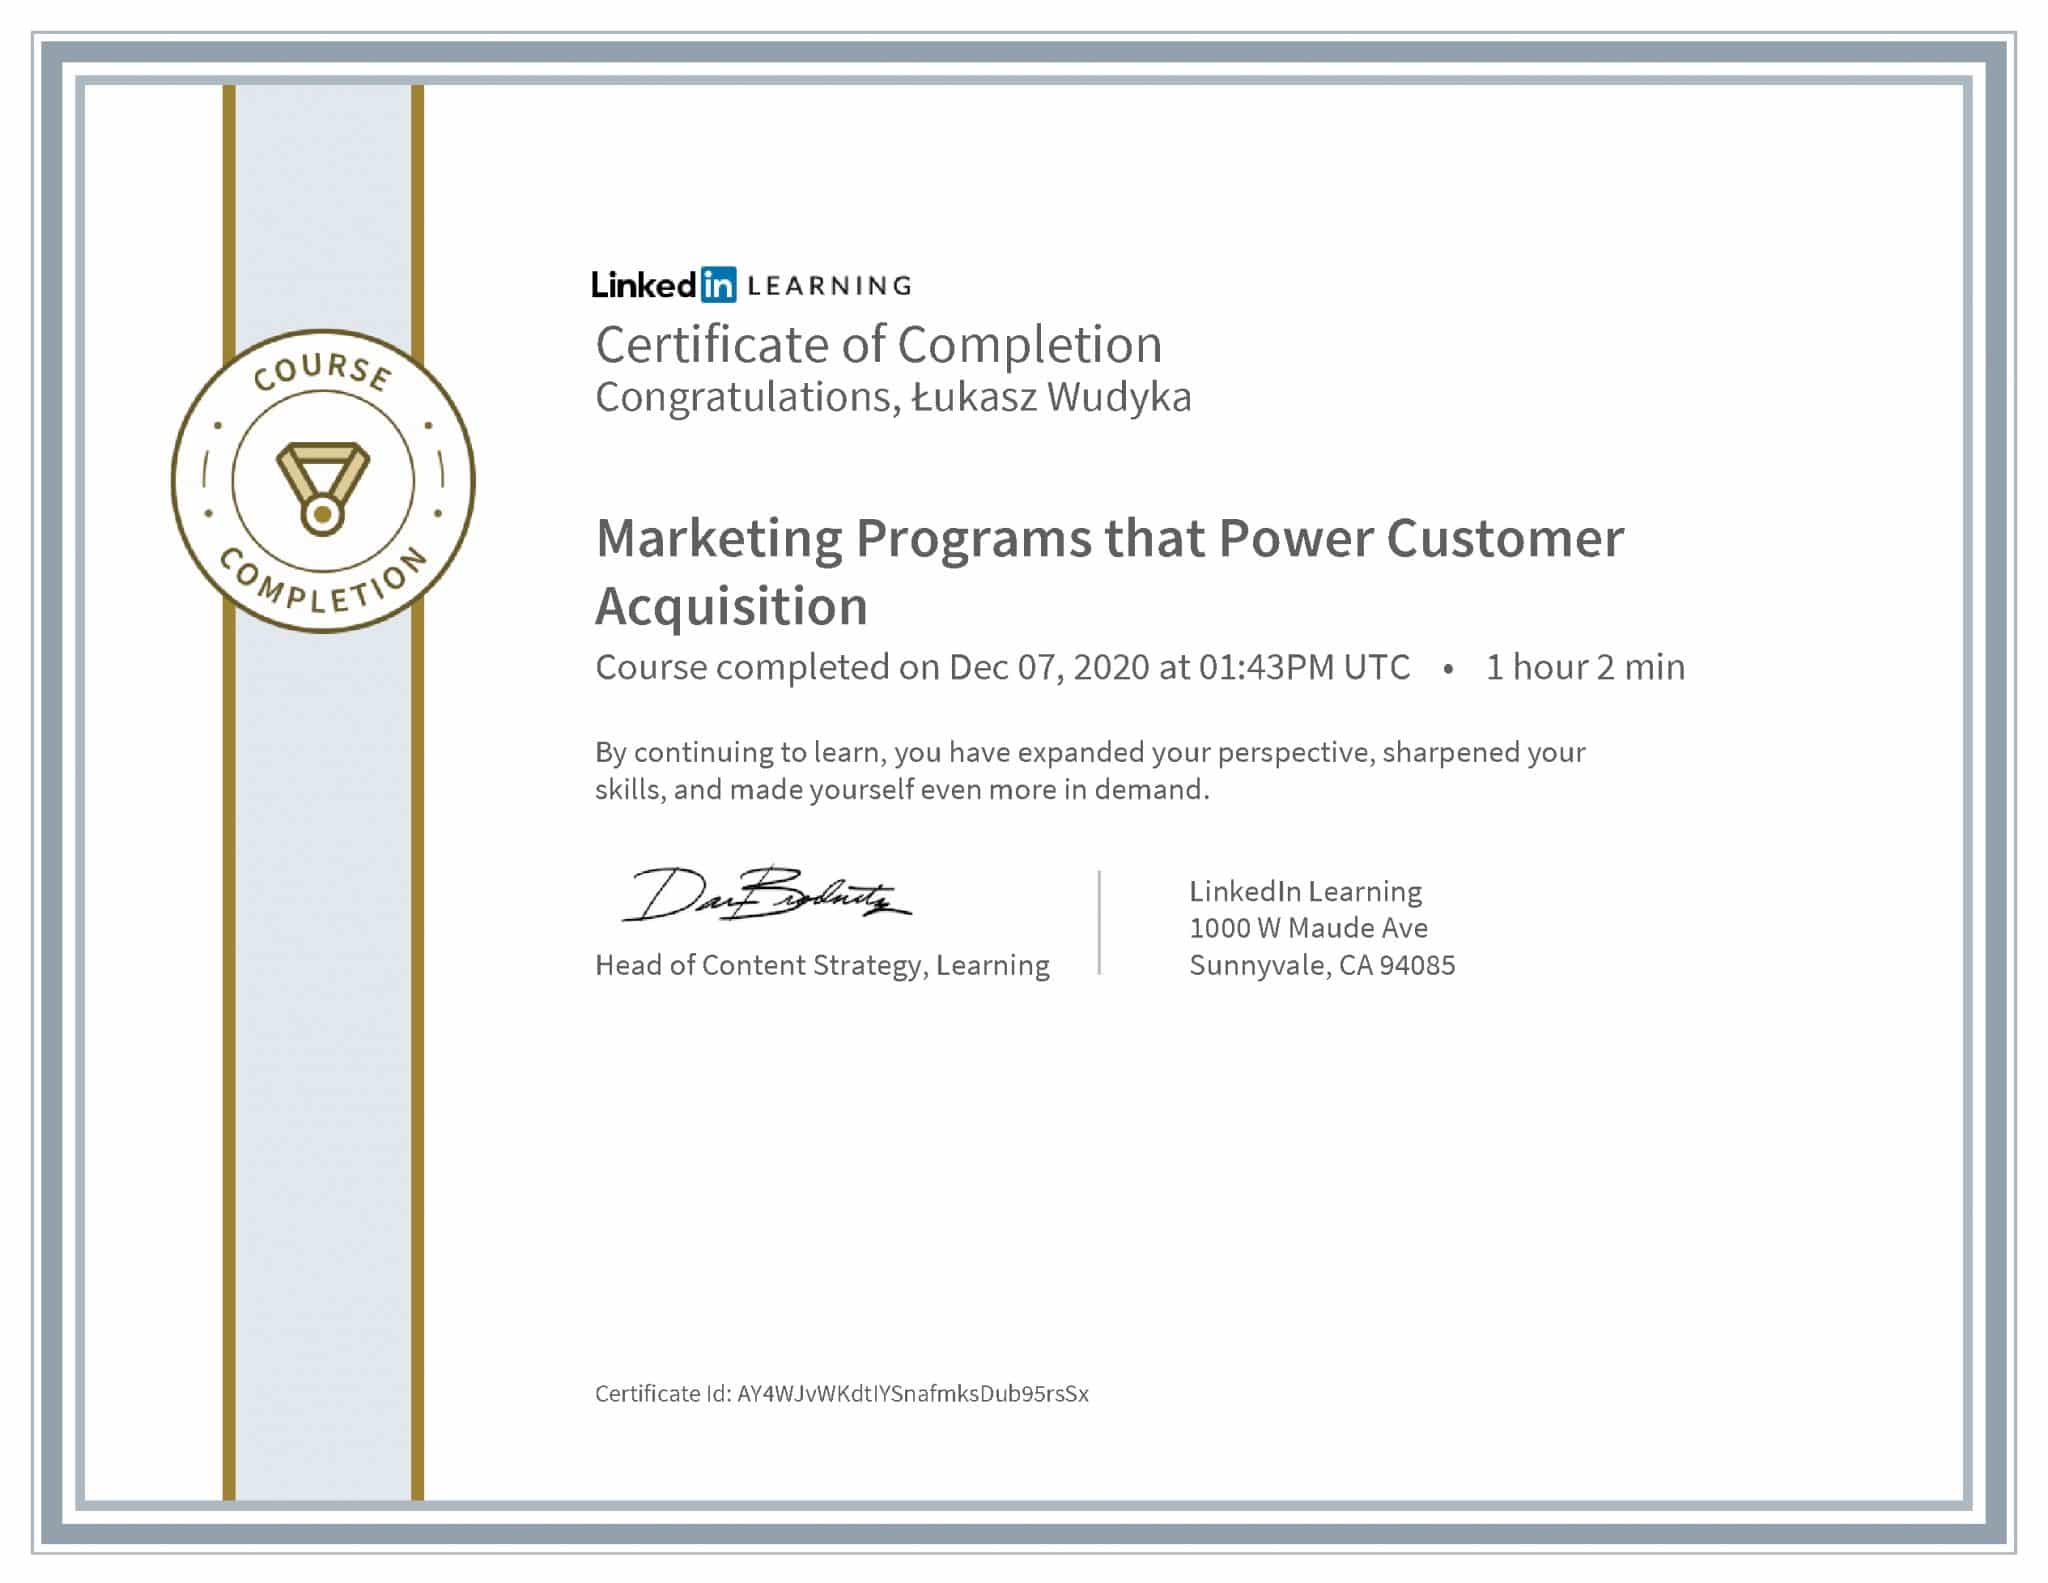 Łukasz Wudyka certyfikat LinkedIn Marketing Programs that Power Customer Acquisition